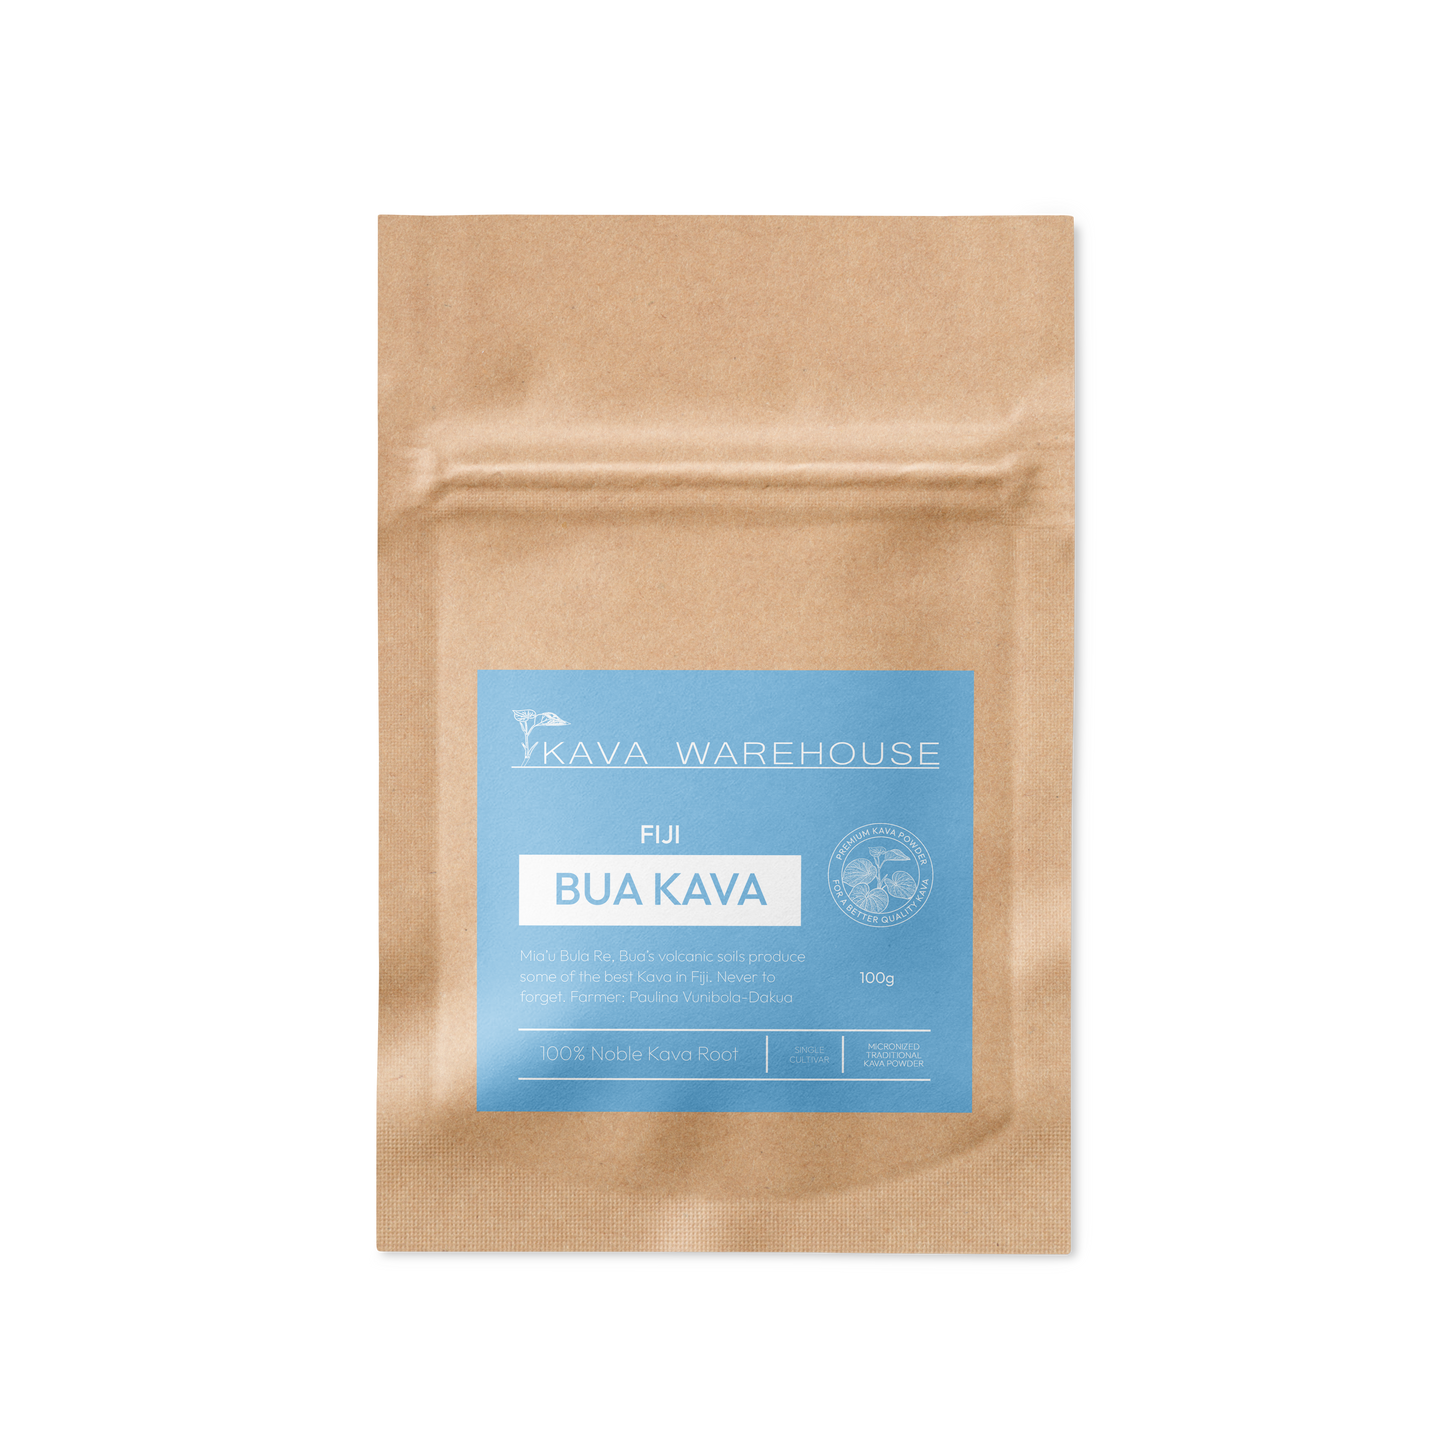 Bua Kava -Fiji -Micronized Traditional Powder